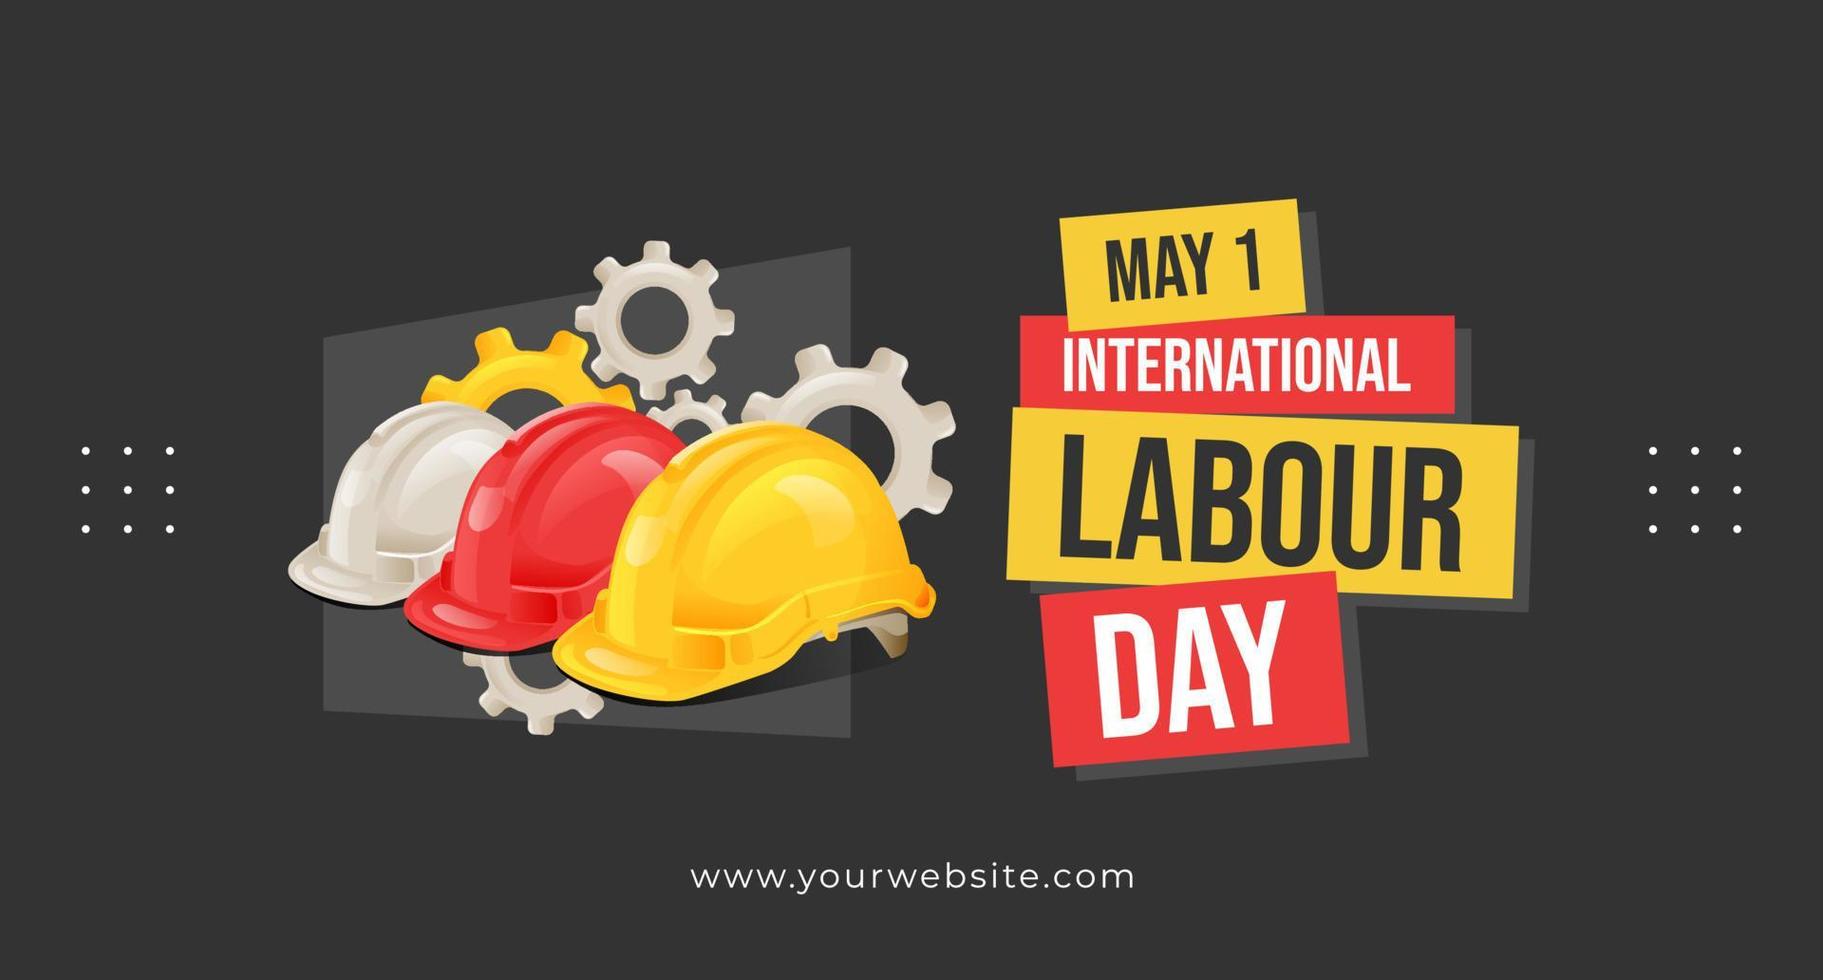 internationell arbetskraft dag Maj 1 baner med säkerhet hjälm och redskap illustration begrepp vektor